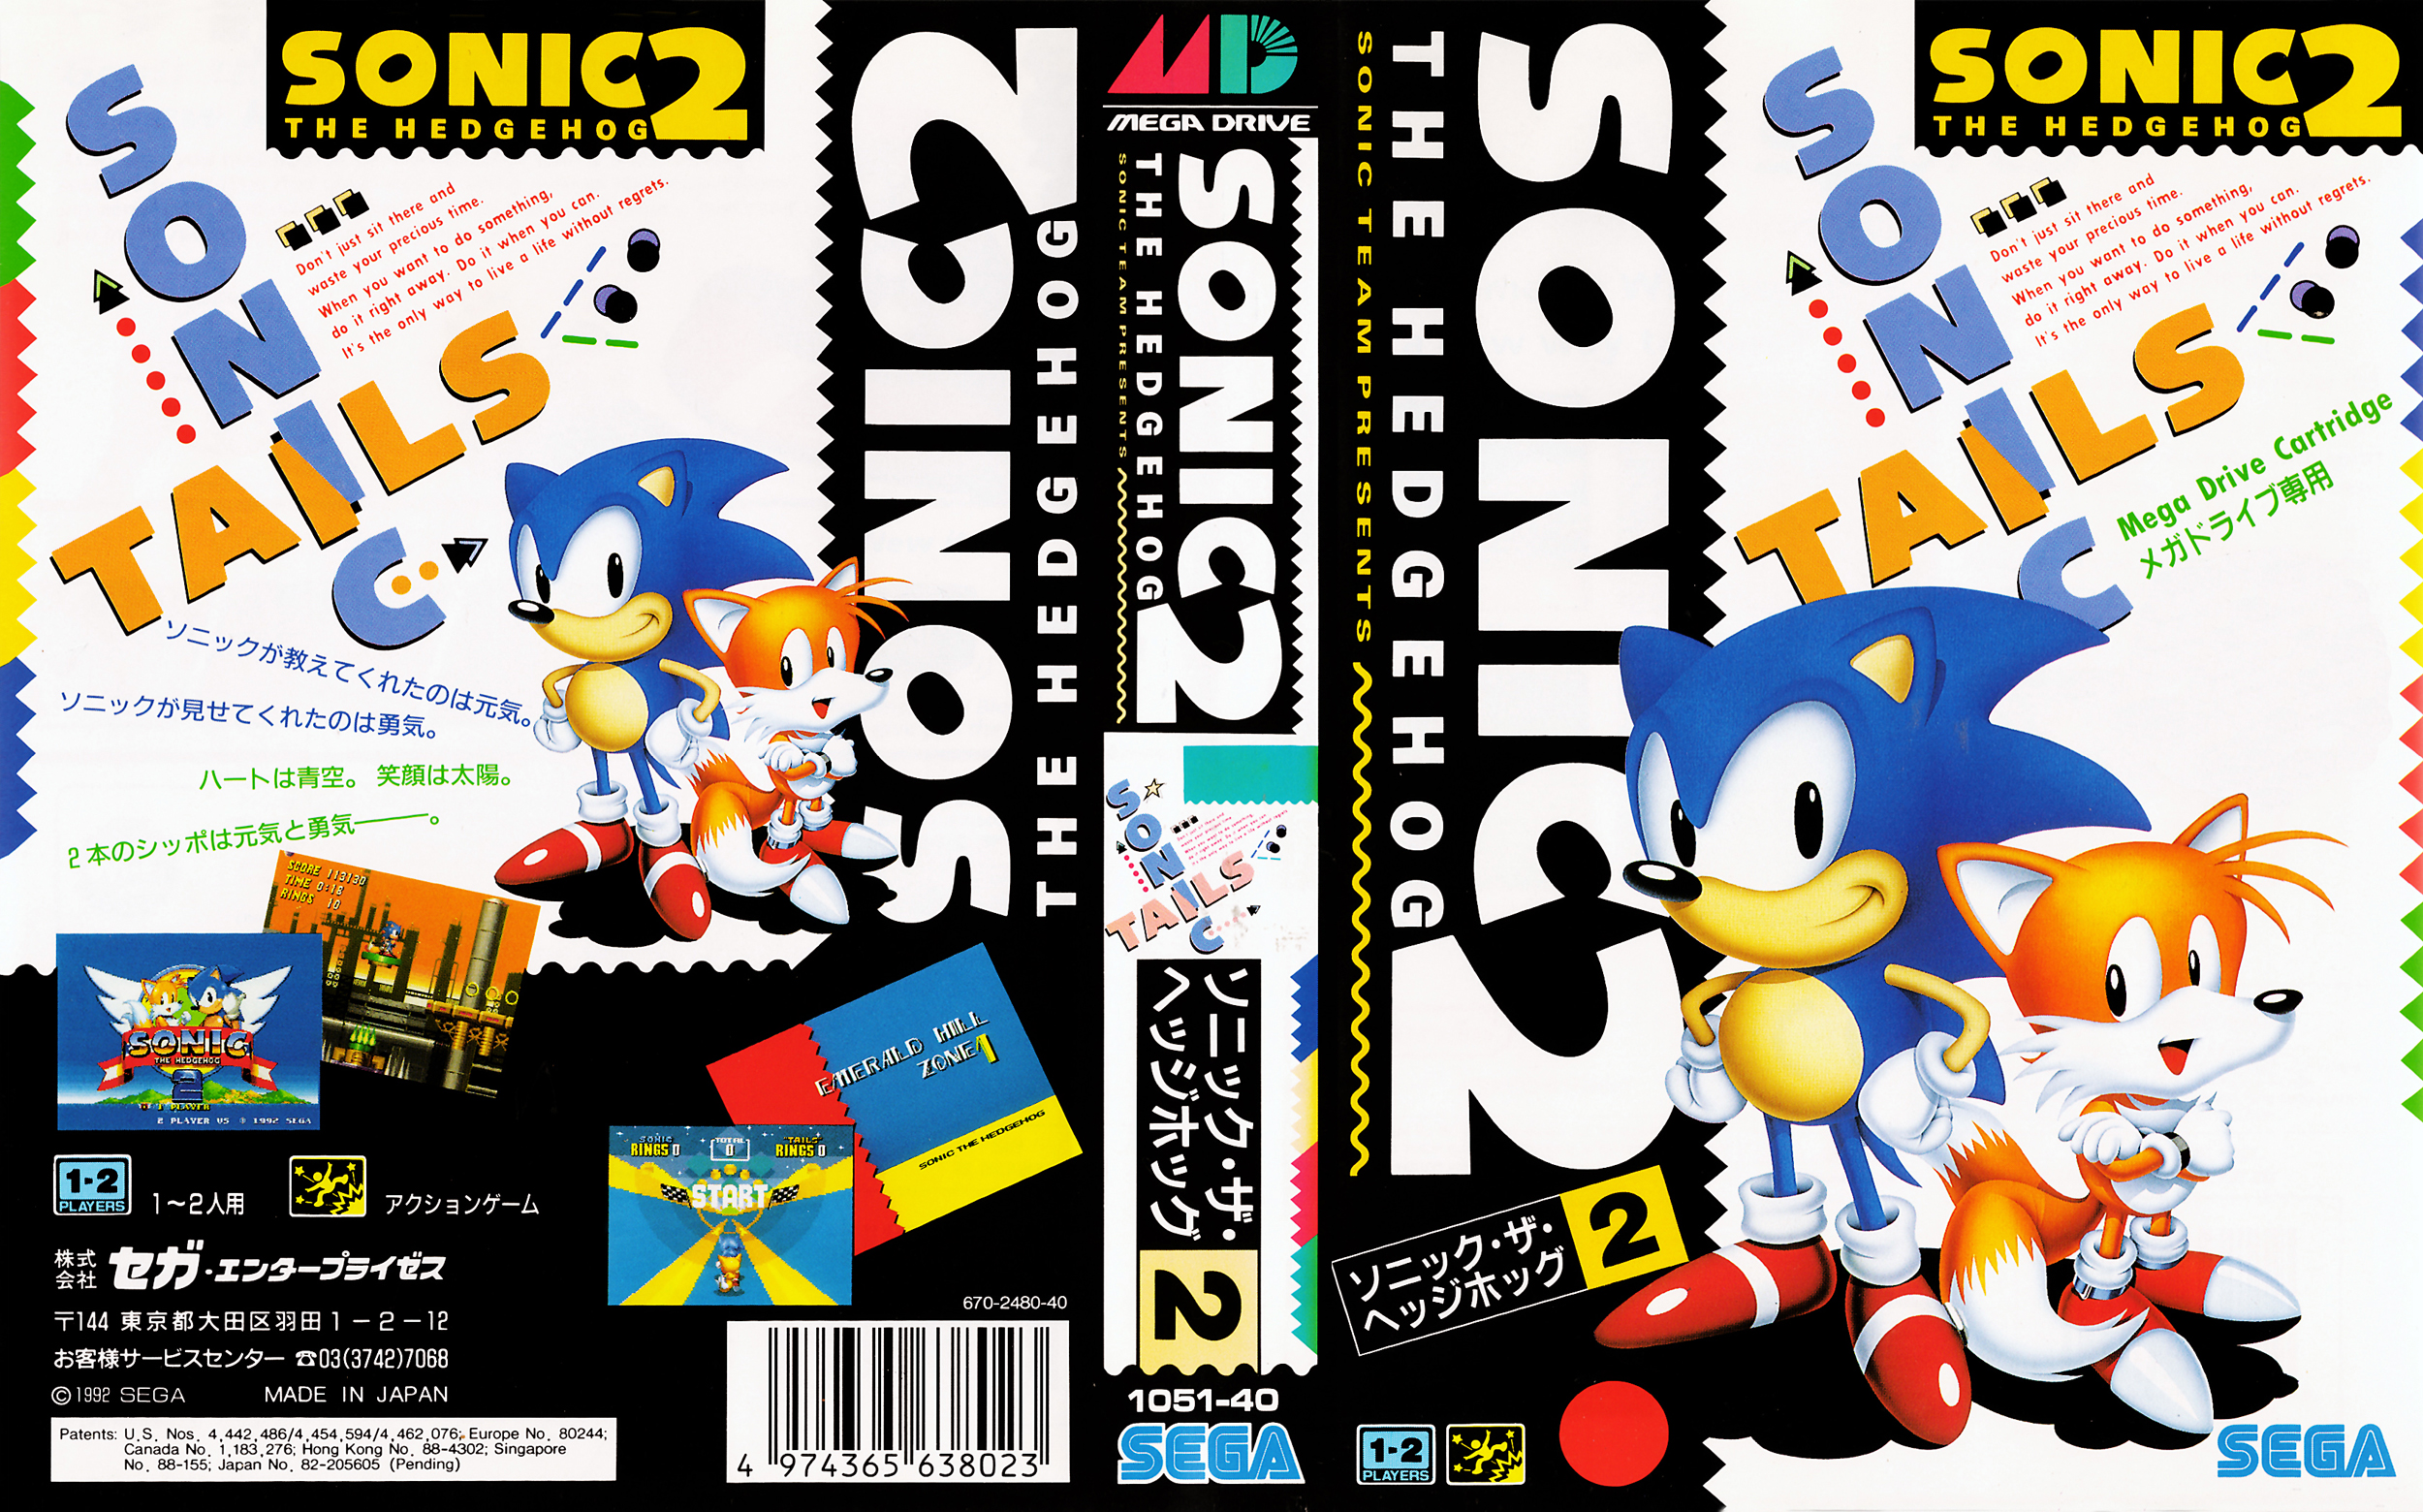 Sonic jp. Sonic 2 Genesis обложка. Sonic the Hedgehog 2 обложка. Sonic 2 сега. Sonic 2 Sega Japan.